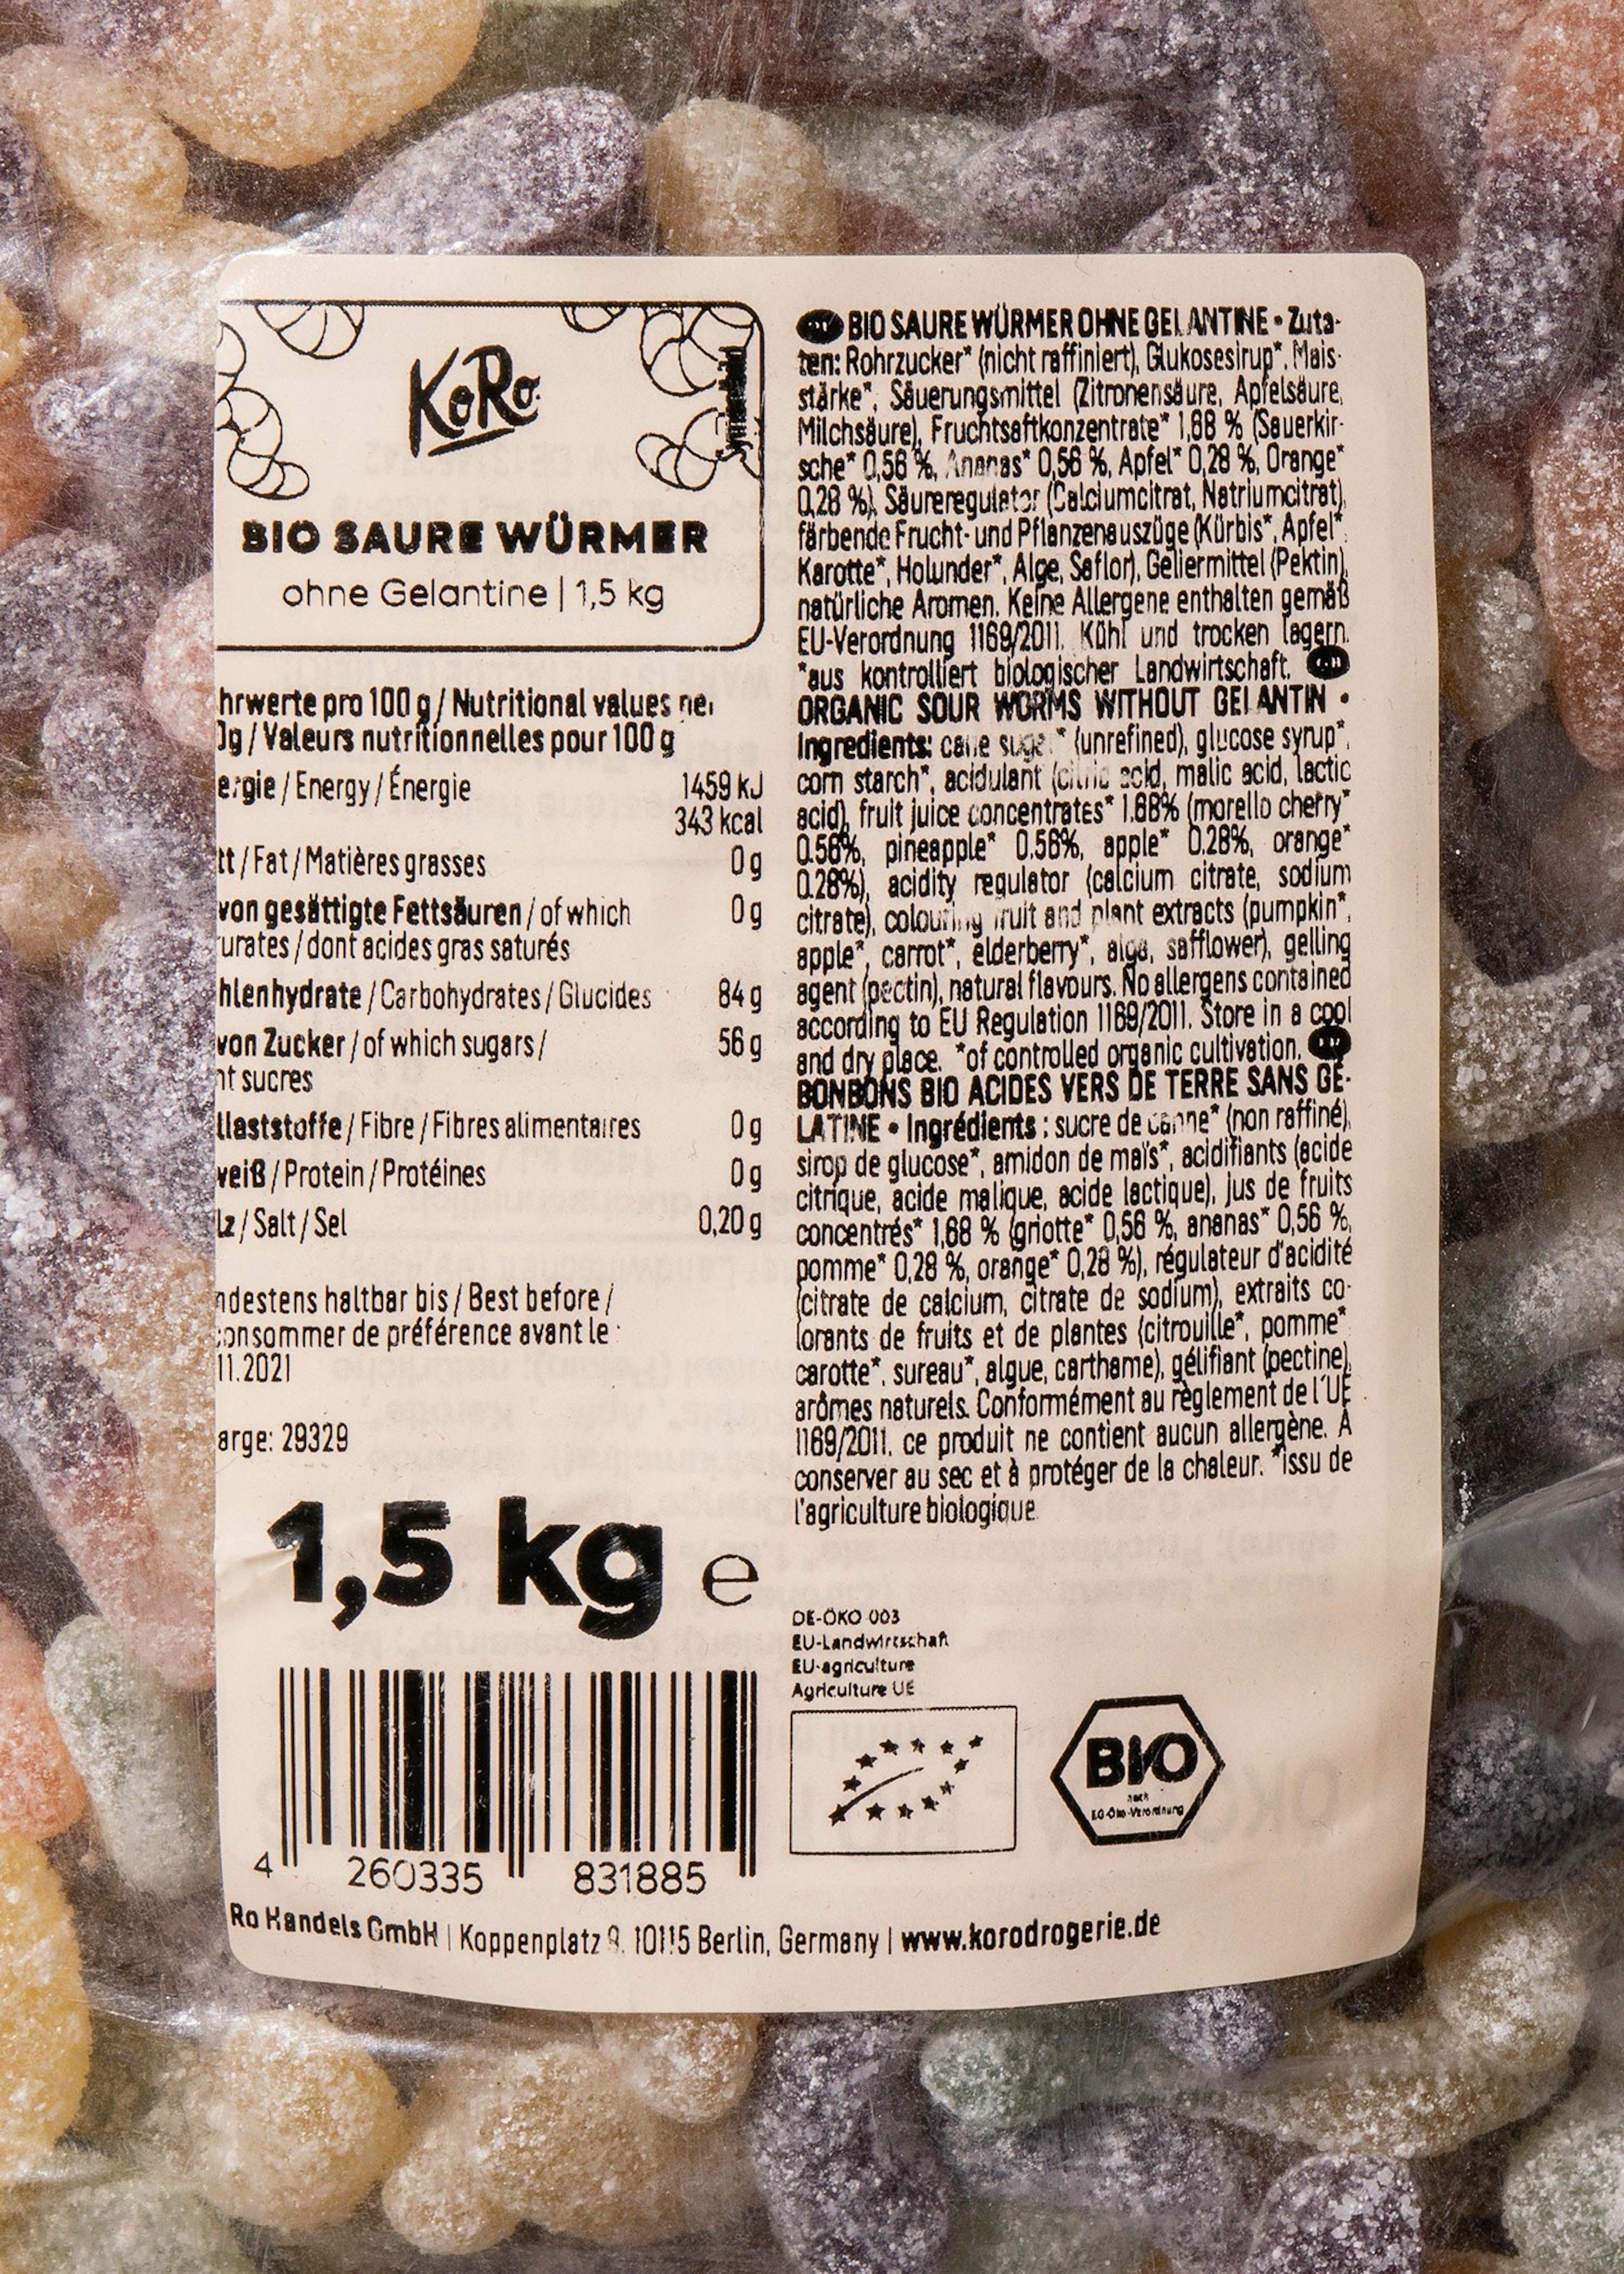 Bonbons bio acides vers de terre sans gélatine, 1,5 kg